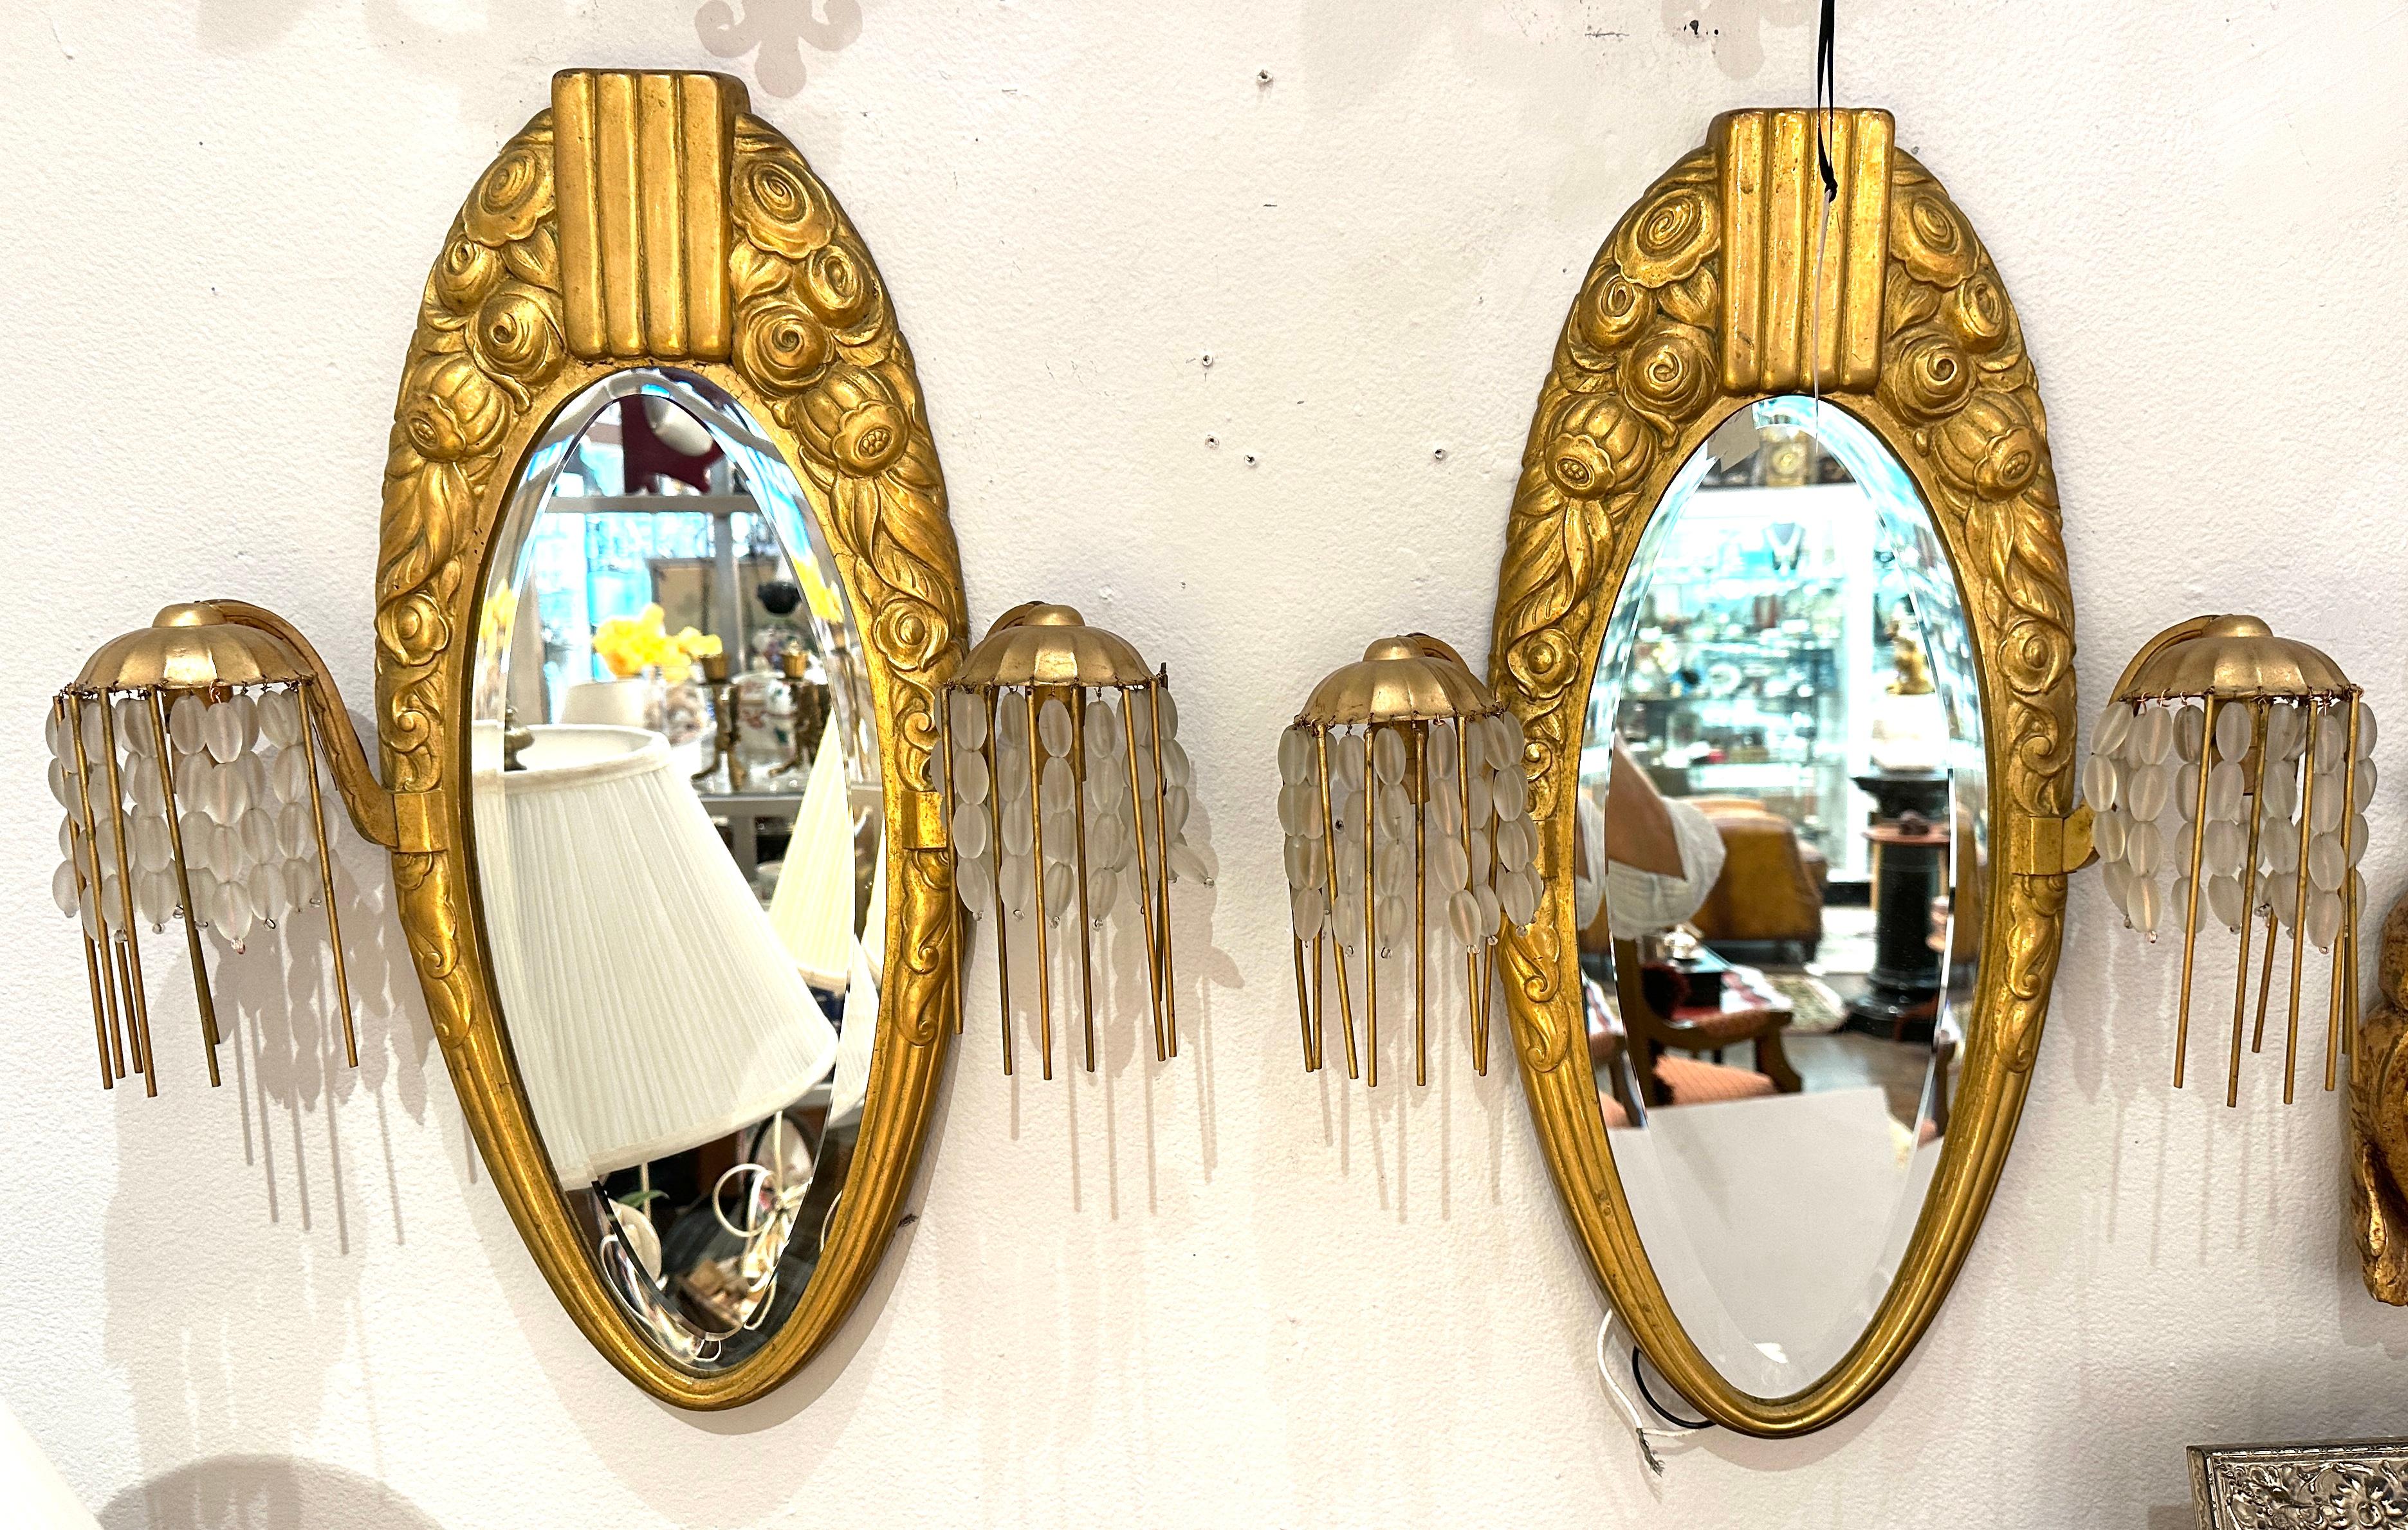 Sue et Mare des années 1920.  Exceptionnellement beau miroir ovale en bronze doré flanqué sur les côtés d'appliques recouvertes de perles de verre.  
Créée par les designers français Sue et Mare.  
Les rétroviseurs à biseau ovale ont été remplacés